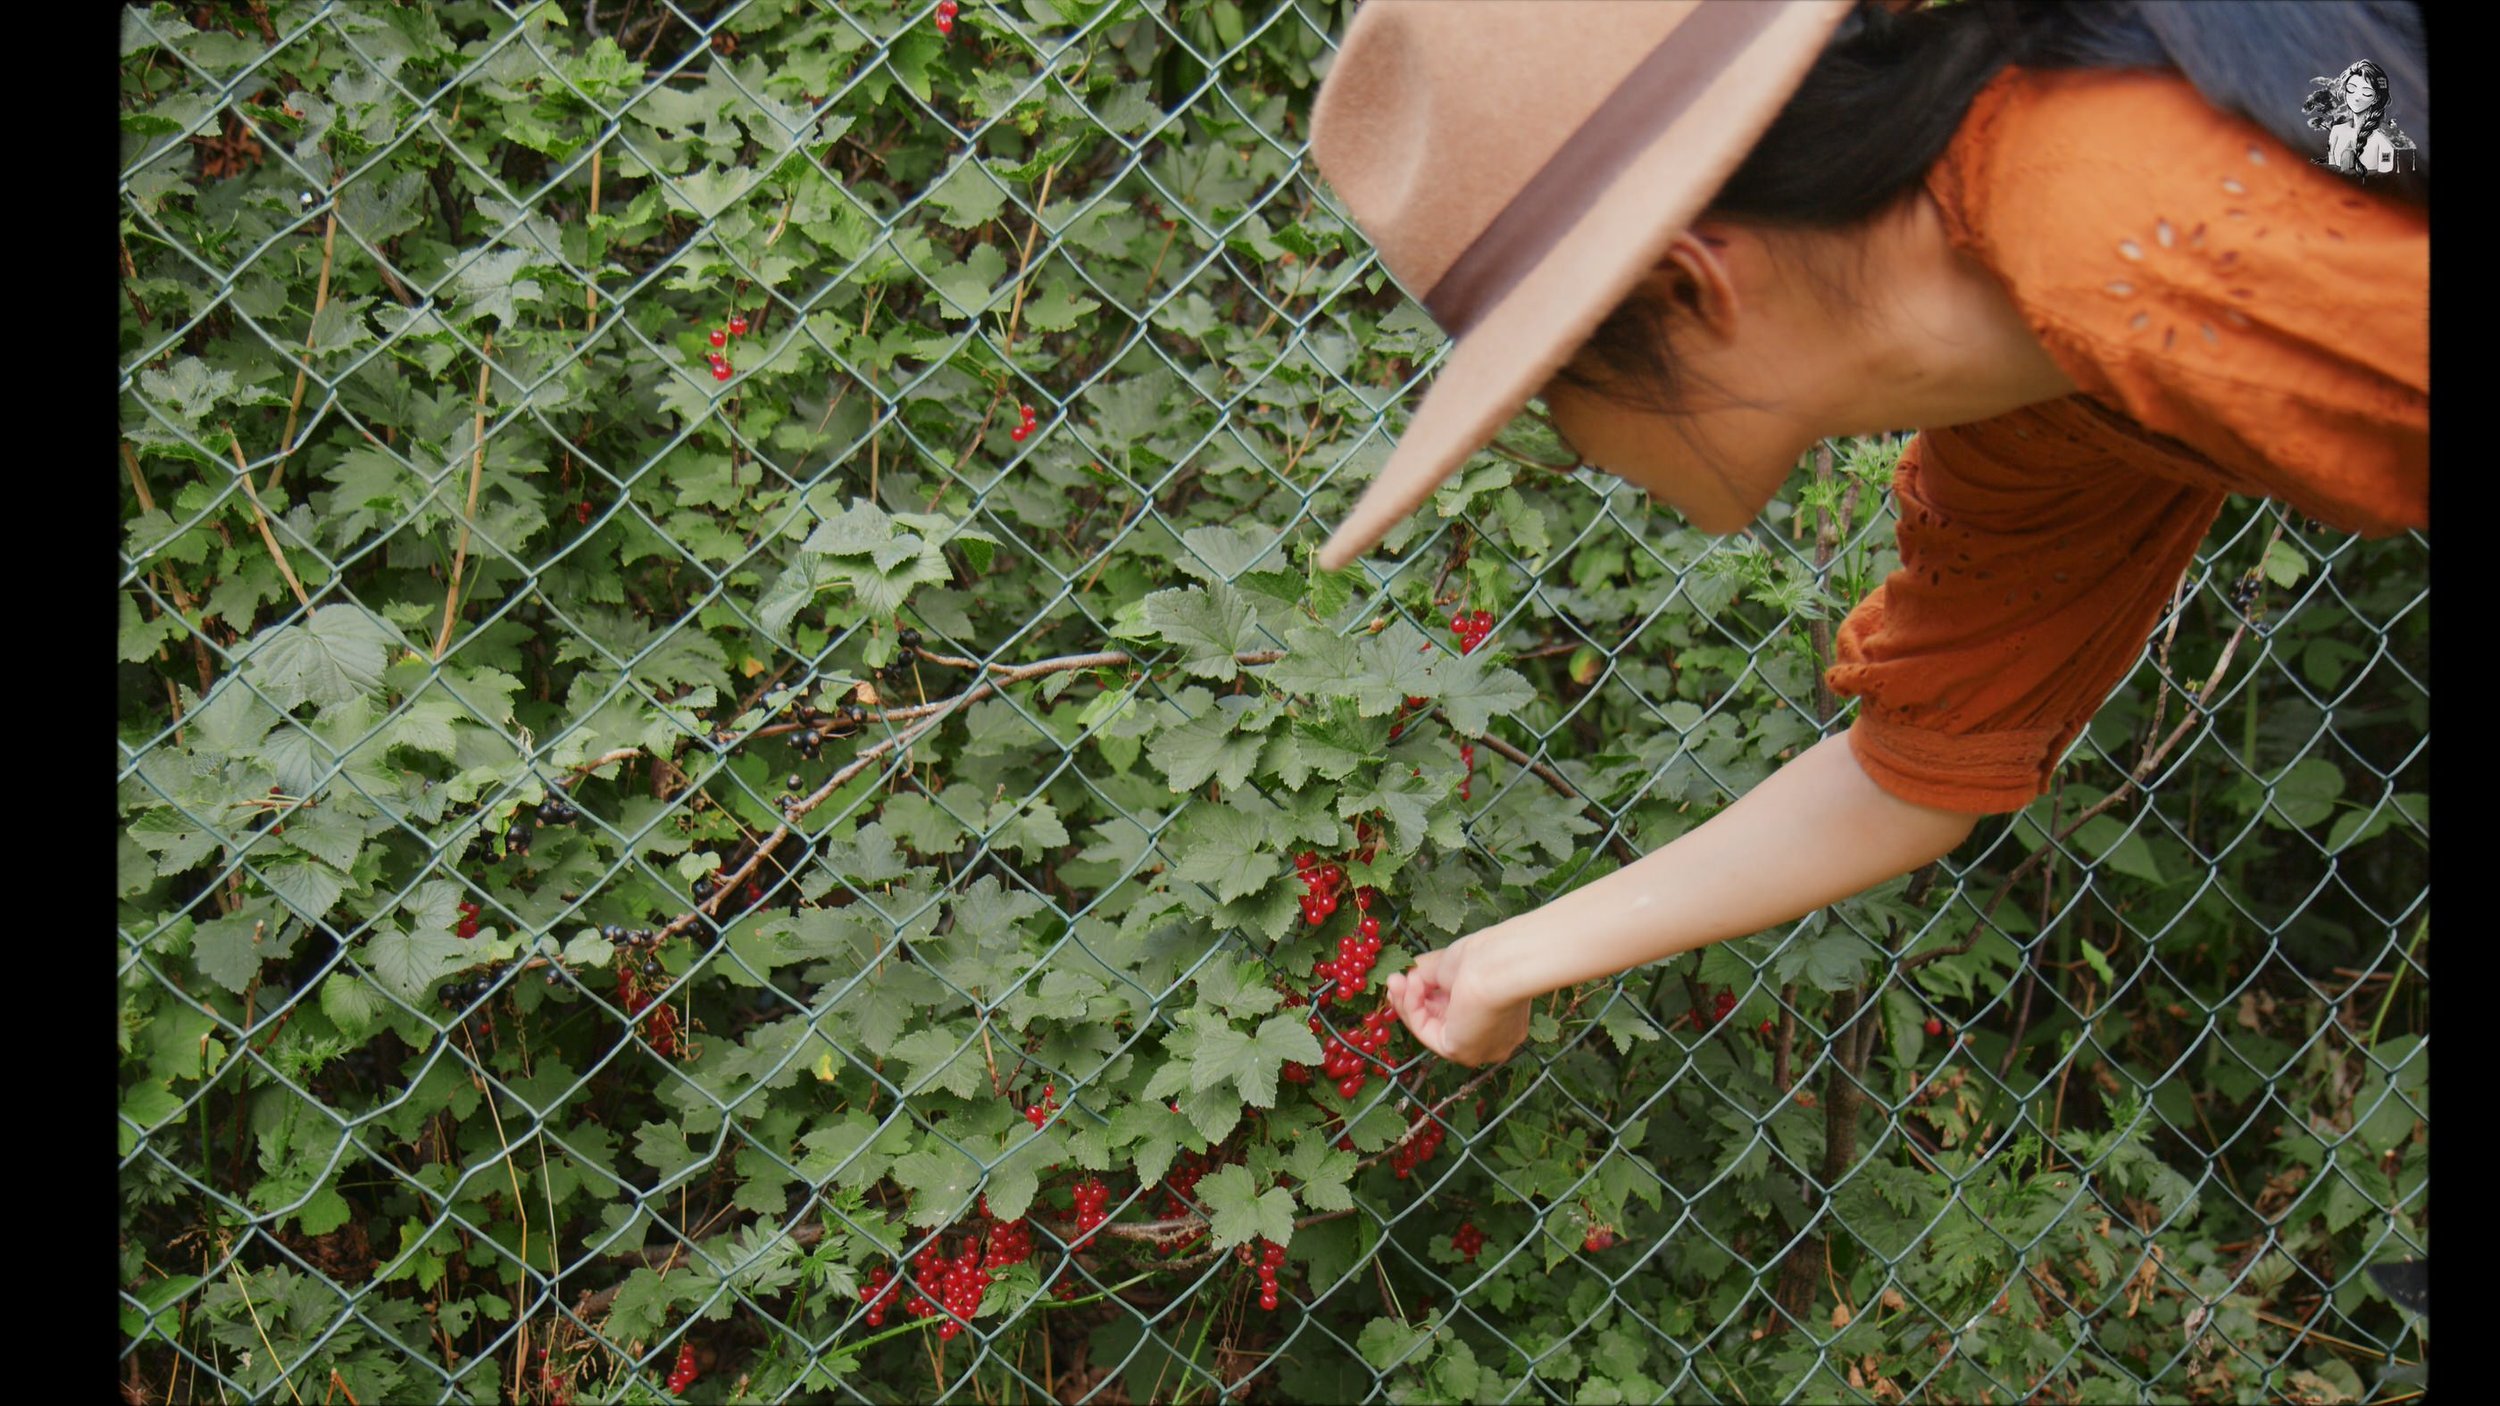 Growing Berries in the Backyard Garden - Her86m2 _1.220.1.jpg